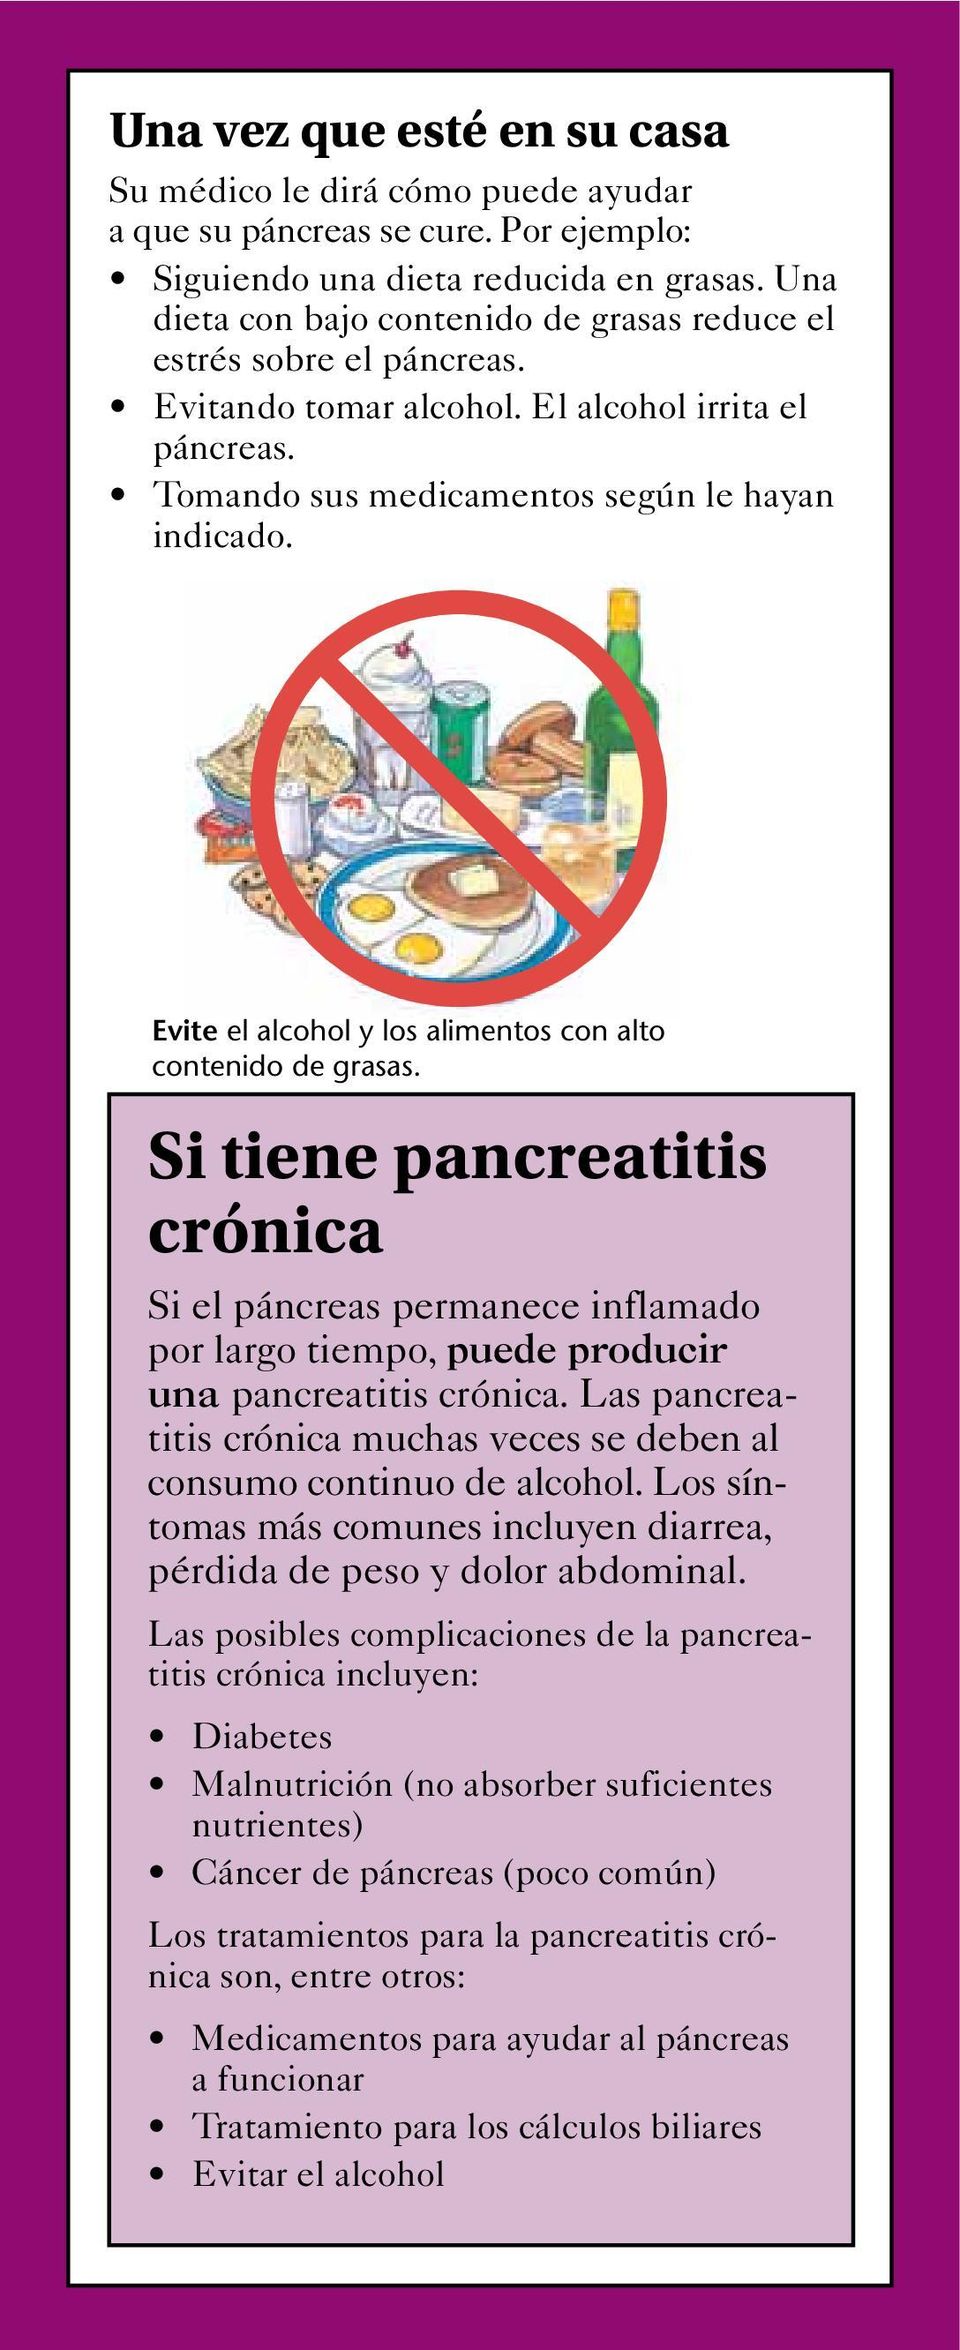 Evite el alcohol y los alimentos con alto contenido de grasas. Si tiene pancreatitis crónica Si el páncreas permanece inflamado por largo tiempo, puede producir una pancreatitis crónica.